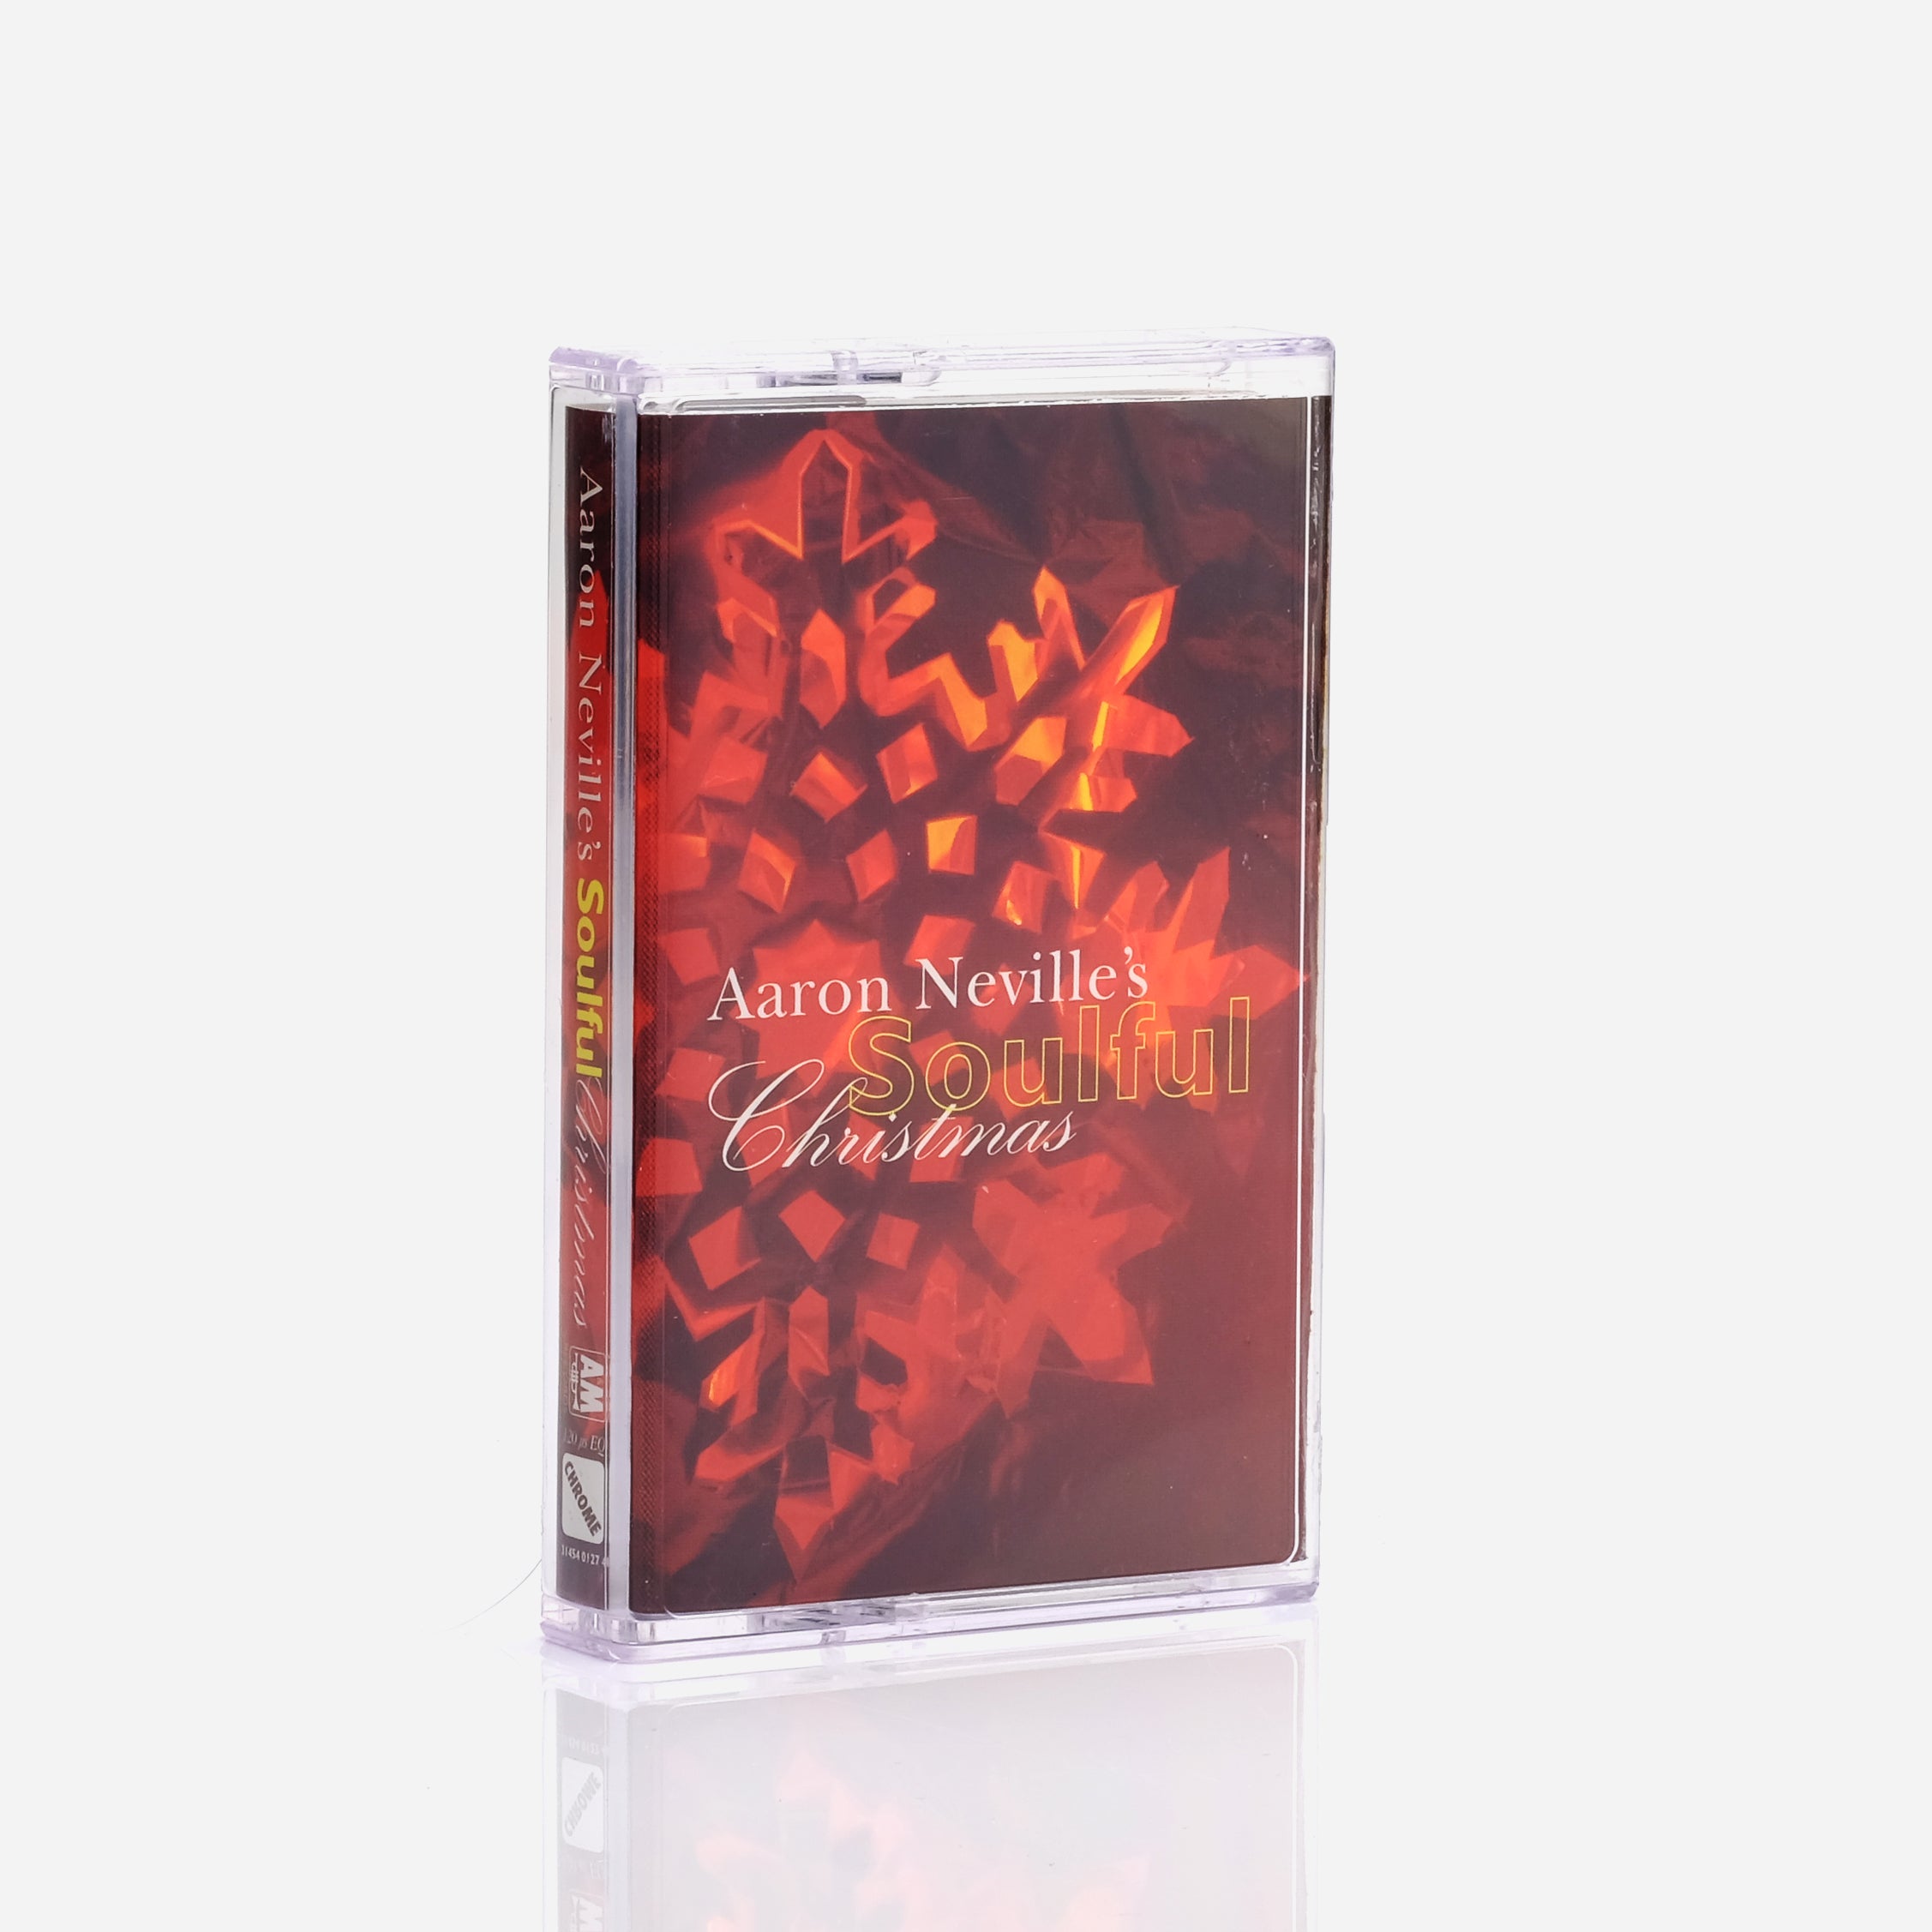 Aaron Neville - Aaron Neville's Soulful Christmas Cassette Tape